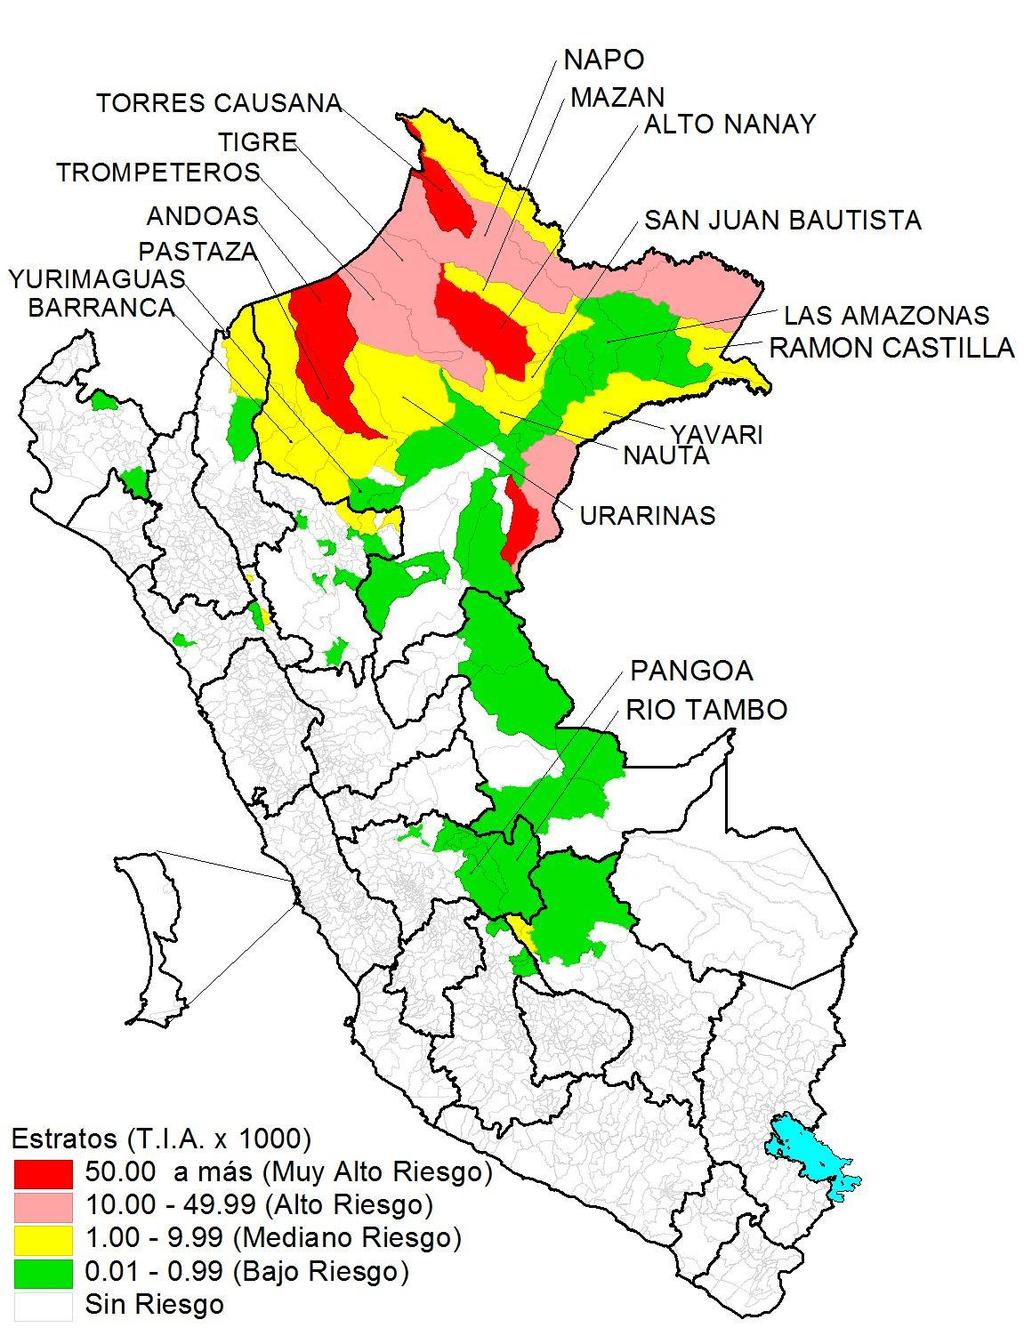 Casos de malaria por departamentos Perú 2017* Departamentos Tipos de Malaria Vivax Falciparum Total Incidencia x 1000 % Muertes LORETO 8374 2941 11315 10.69 94.62 3 AMAZONAS 278 0 278 0.65 2.